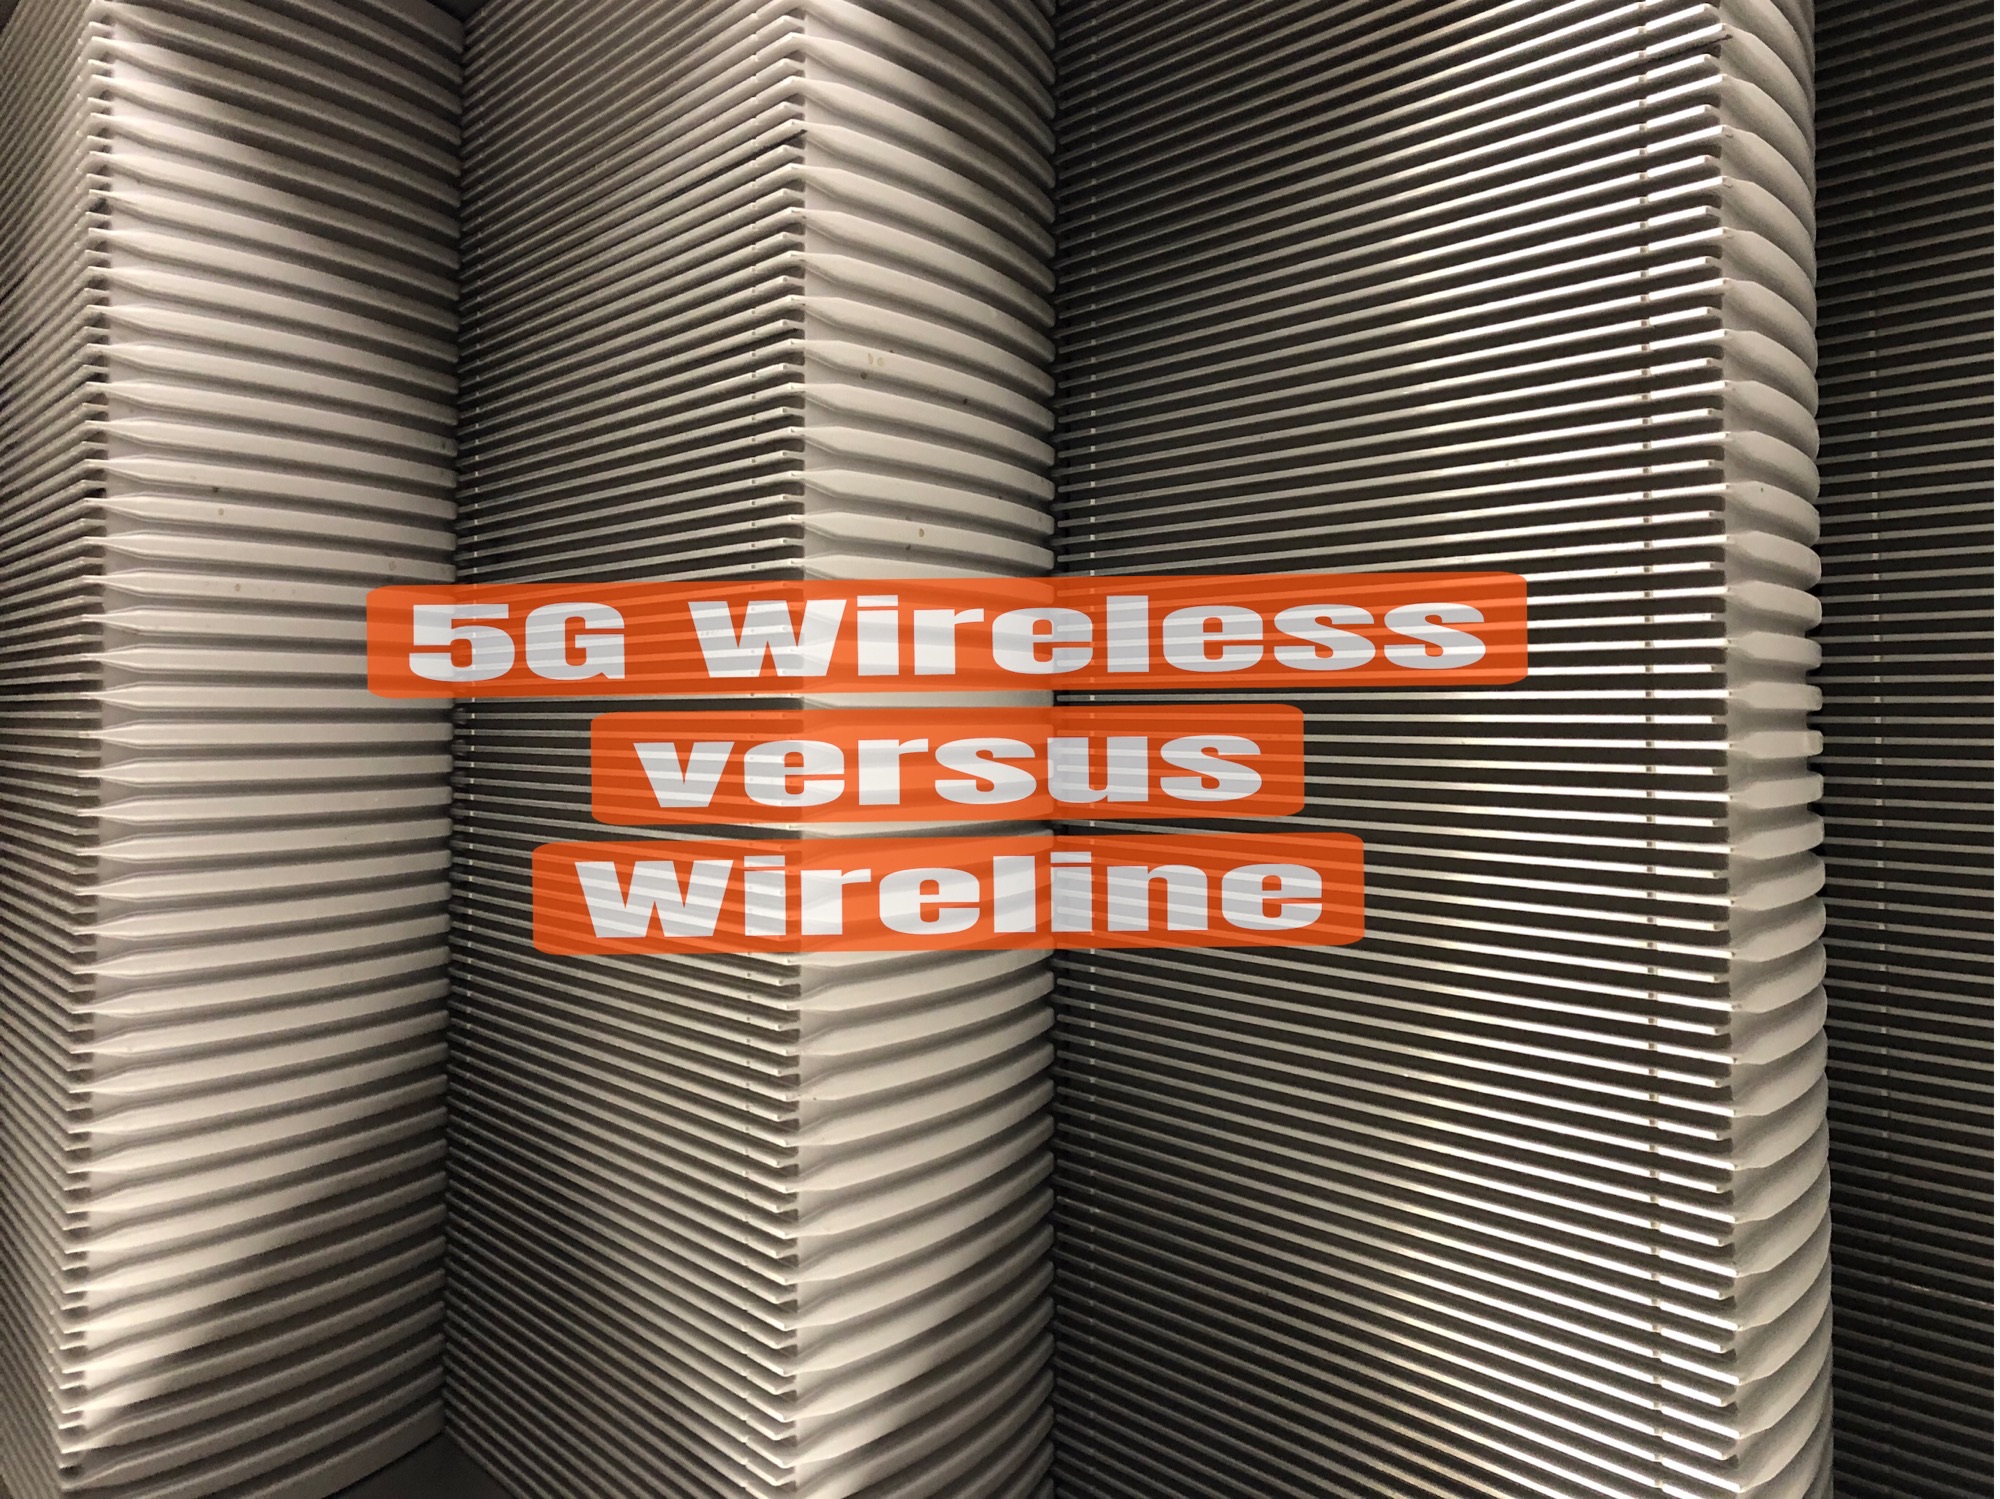 5G Wireless versus Wireline